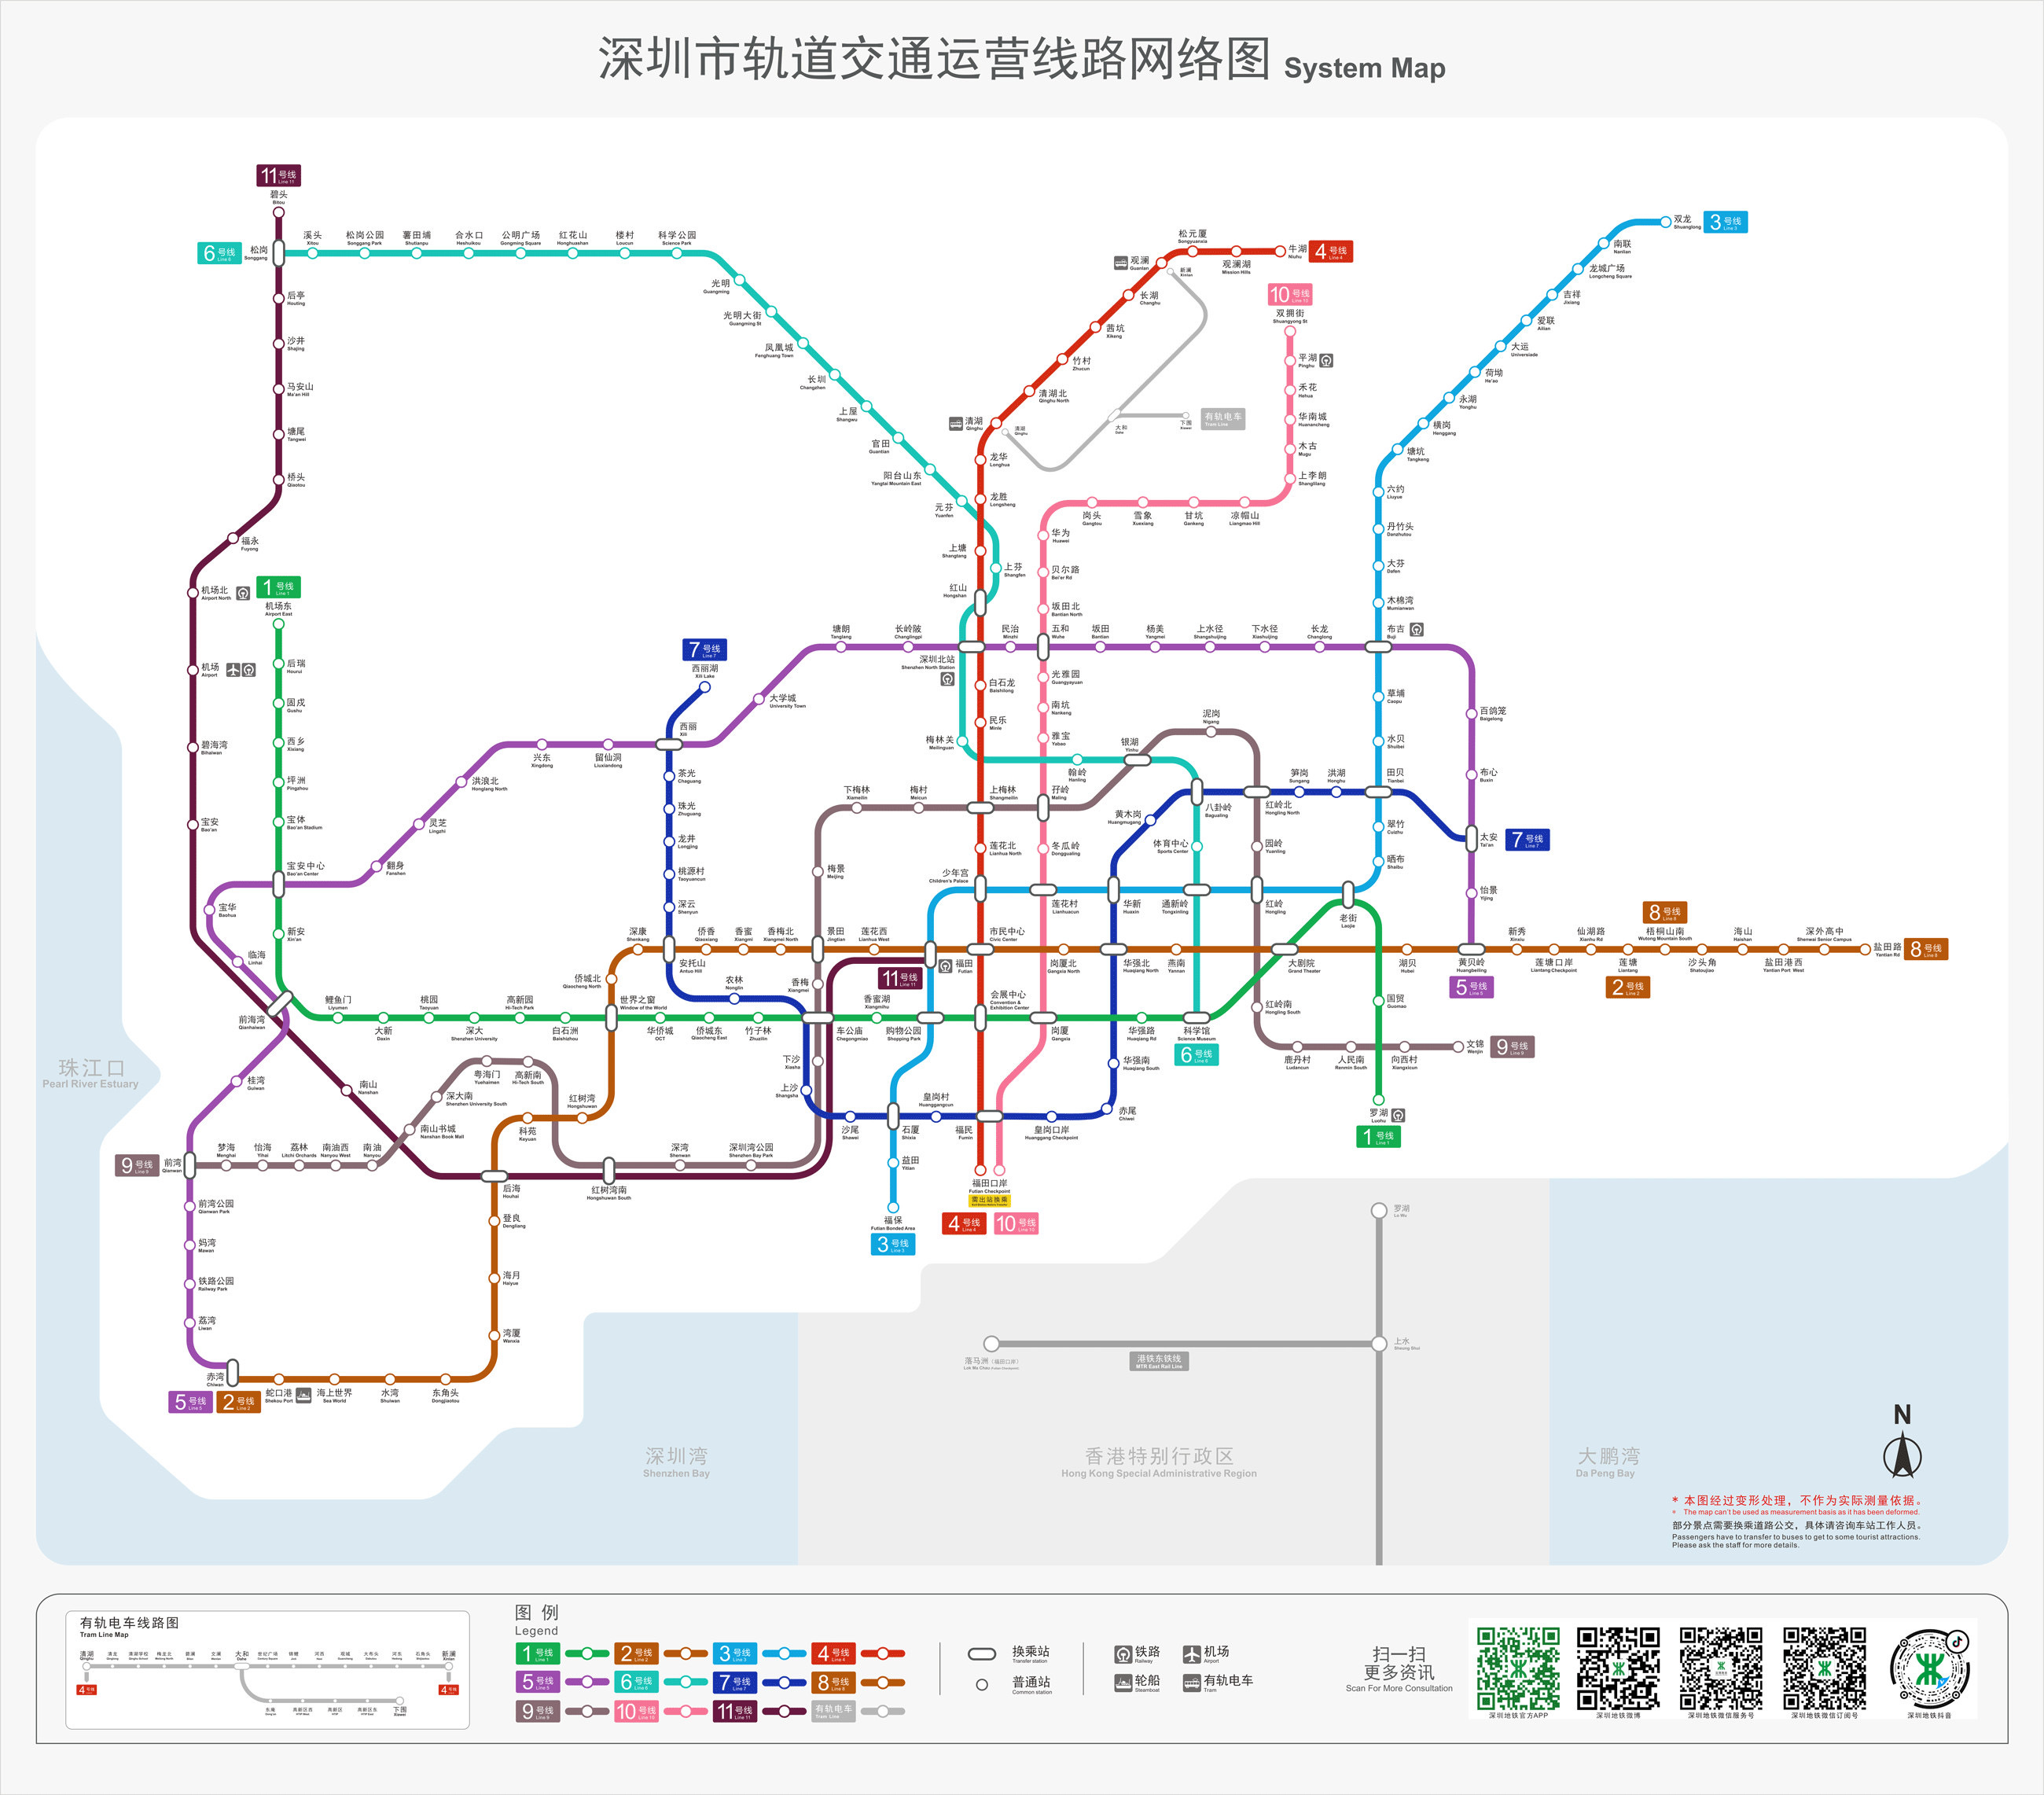 塘厦居民可乘坐m464线到清湖地铁站,换乘地铁4号线到达深圳中心城区